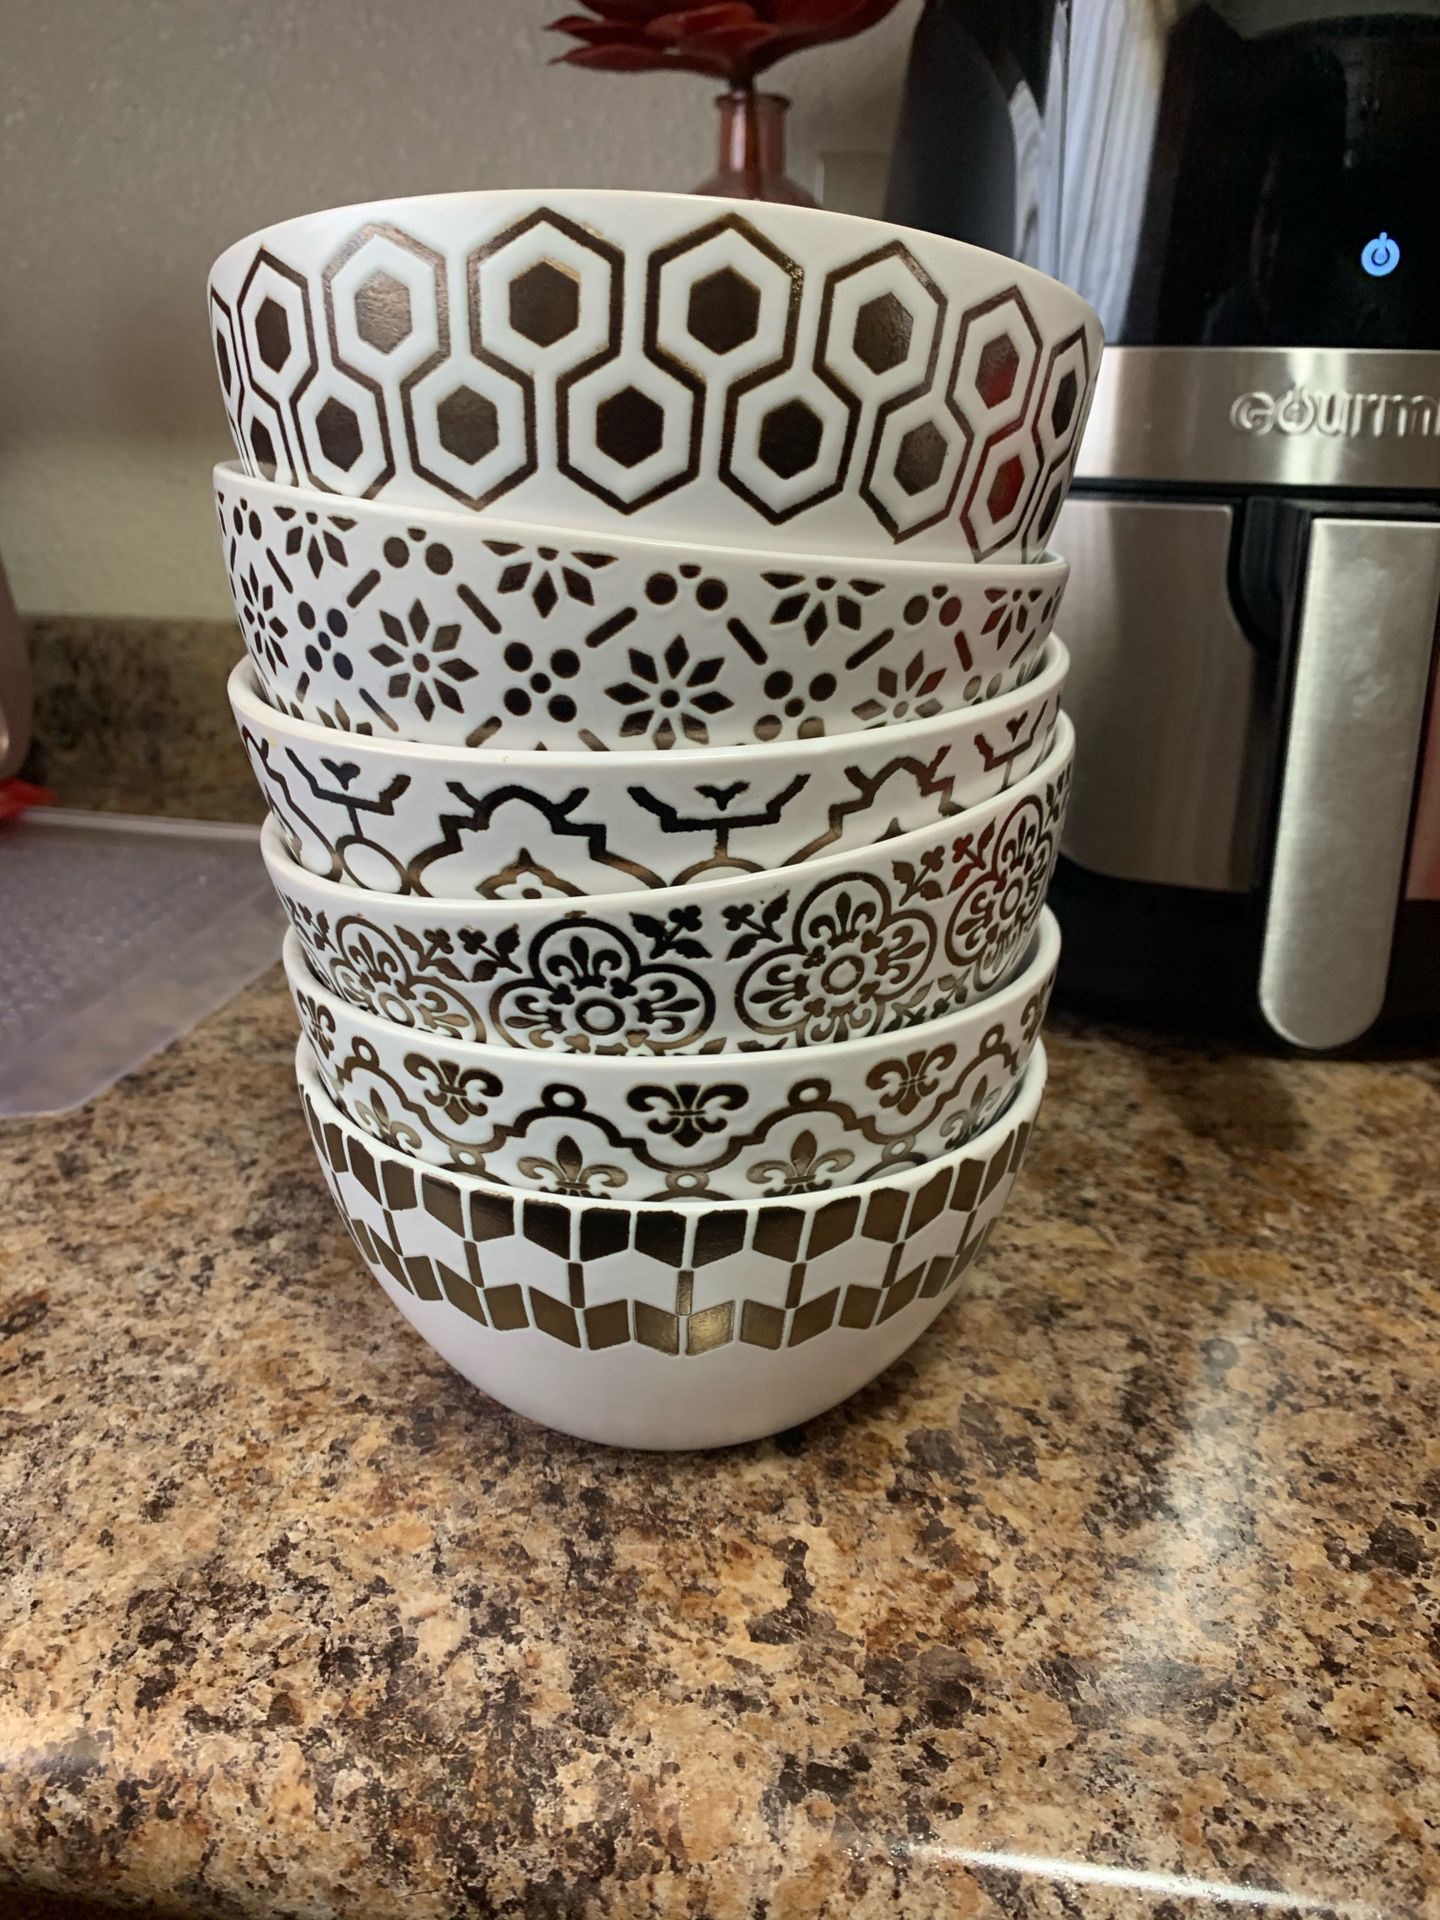 6 piece ceramic bowls